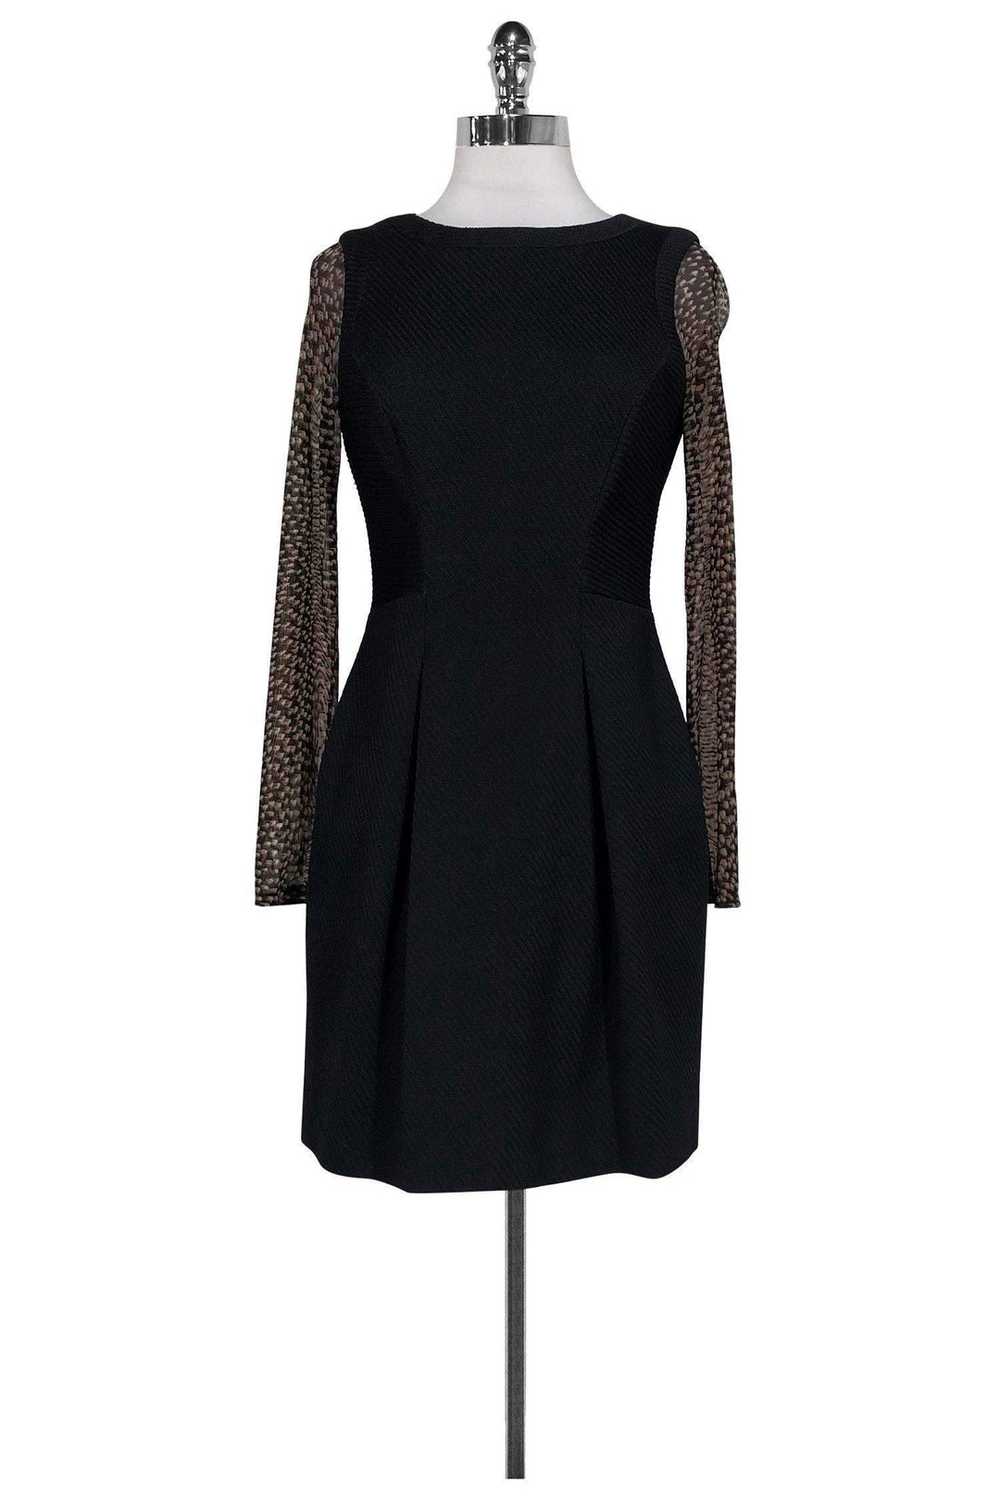 Karen Millen - Black Textured Pattern Sleeve Dres… - image 1